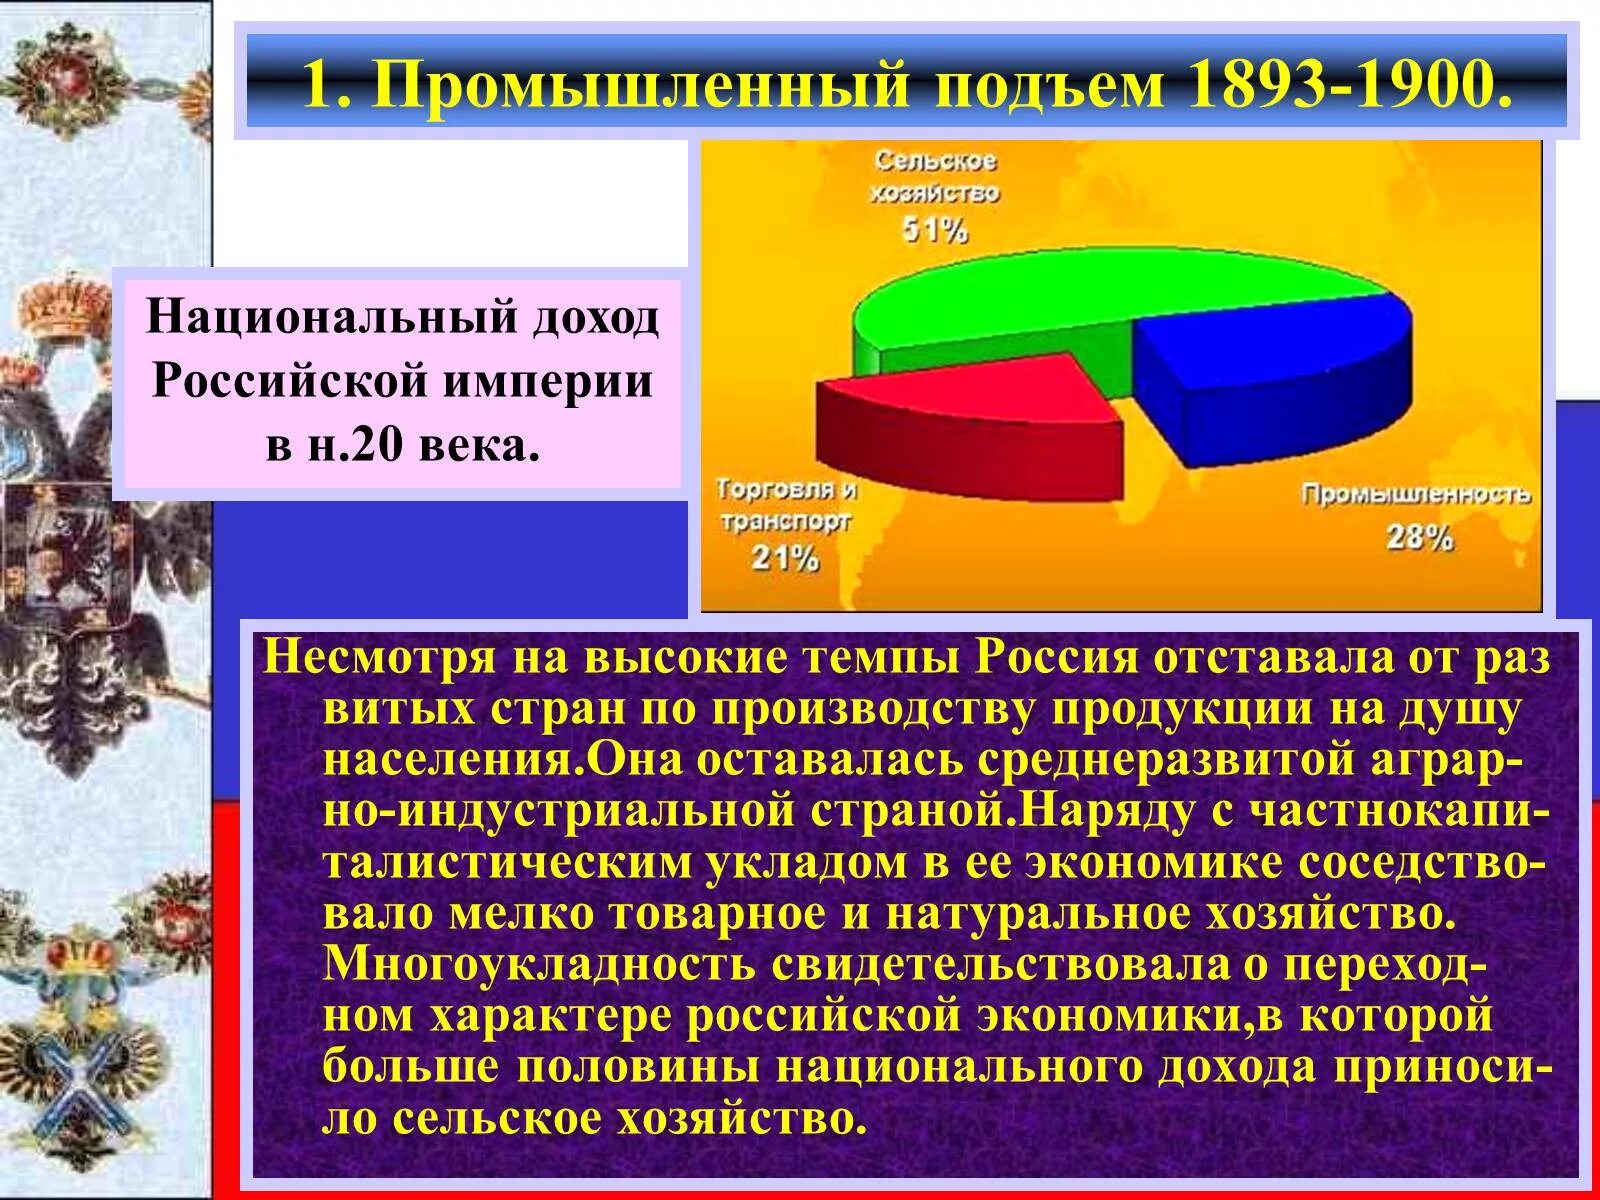 Доходы Российской империи. Экономика Российской империи в 19 веке. Развитие экономики в Российской империи. Экономический подъем в конце 19 века.